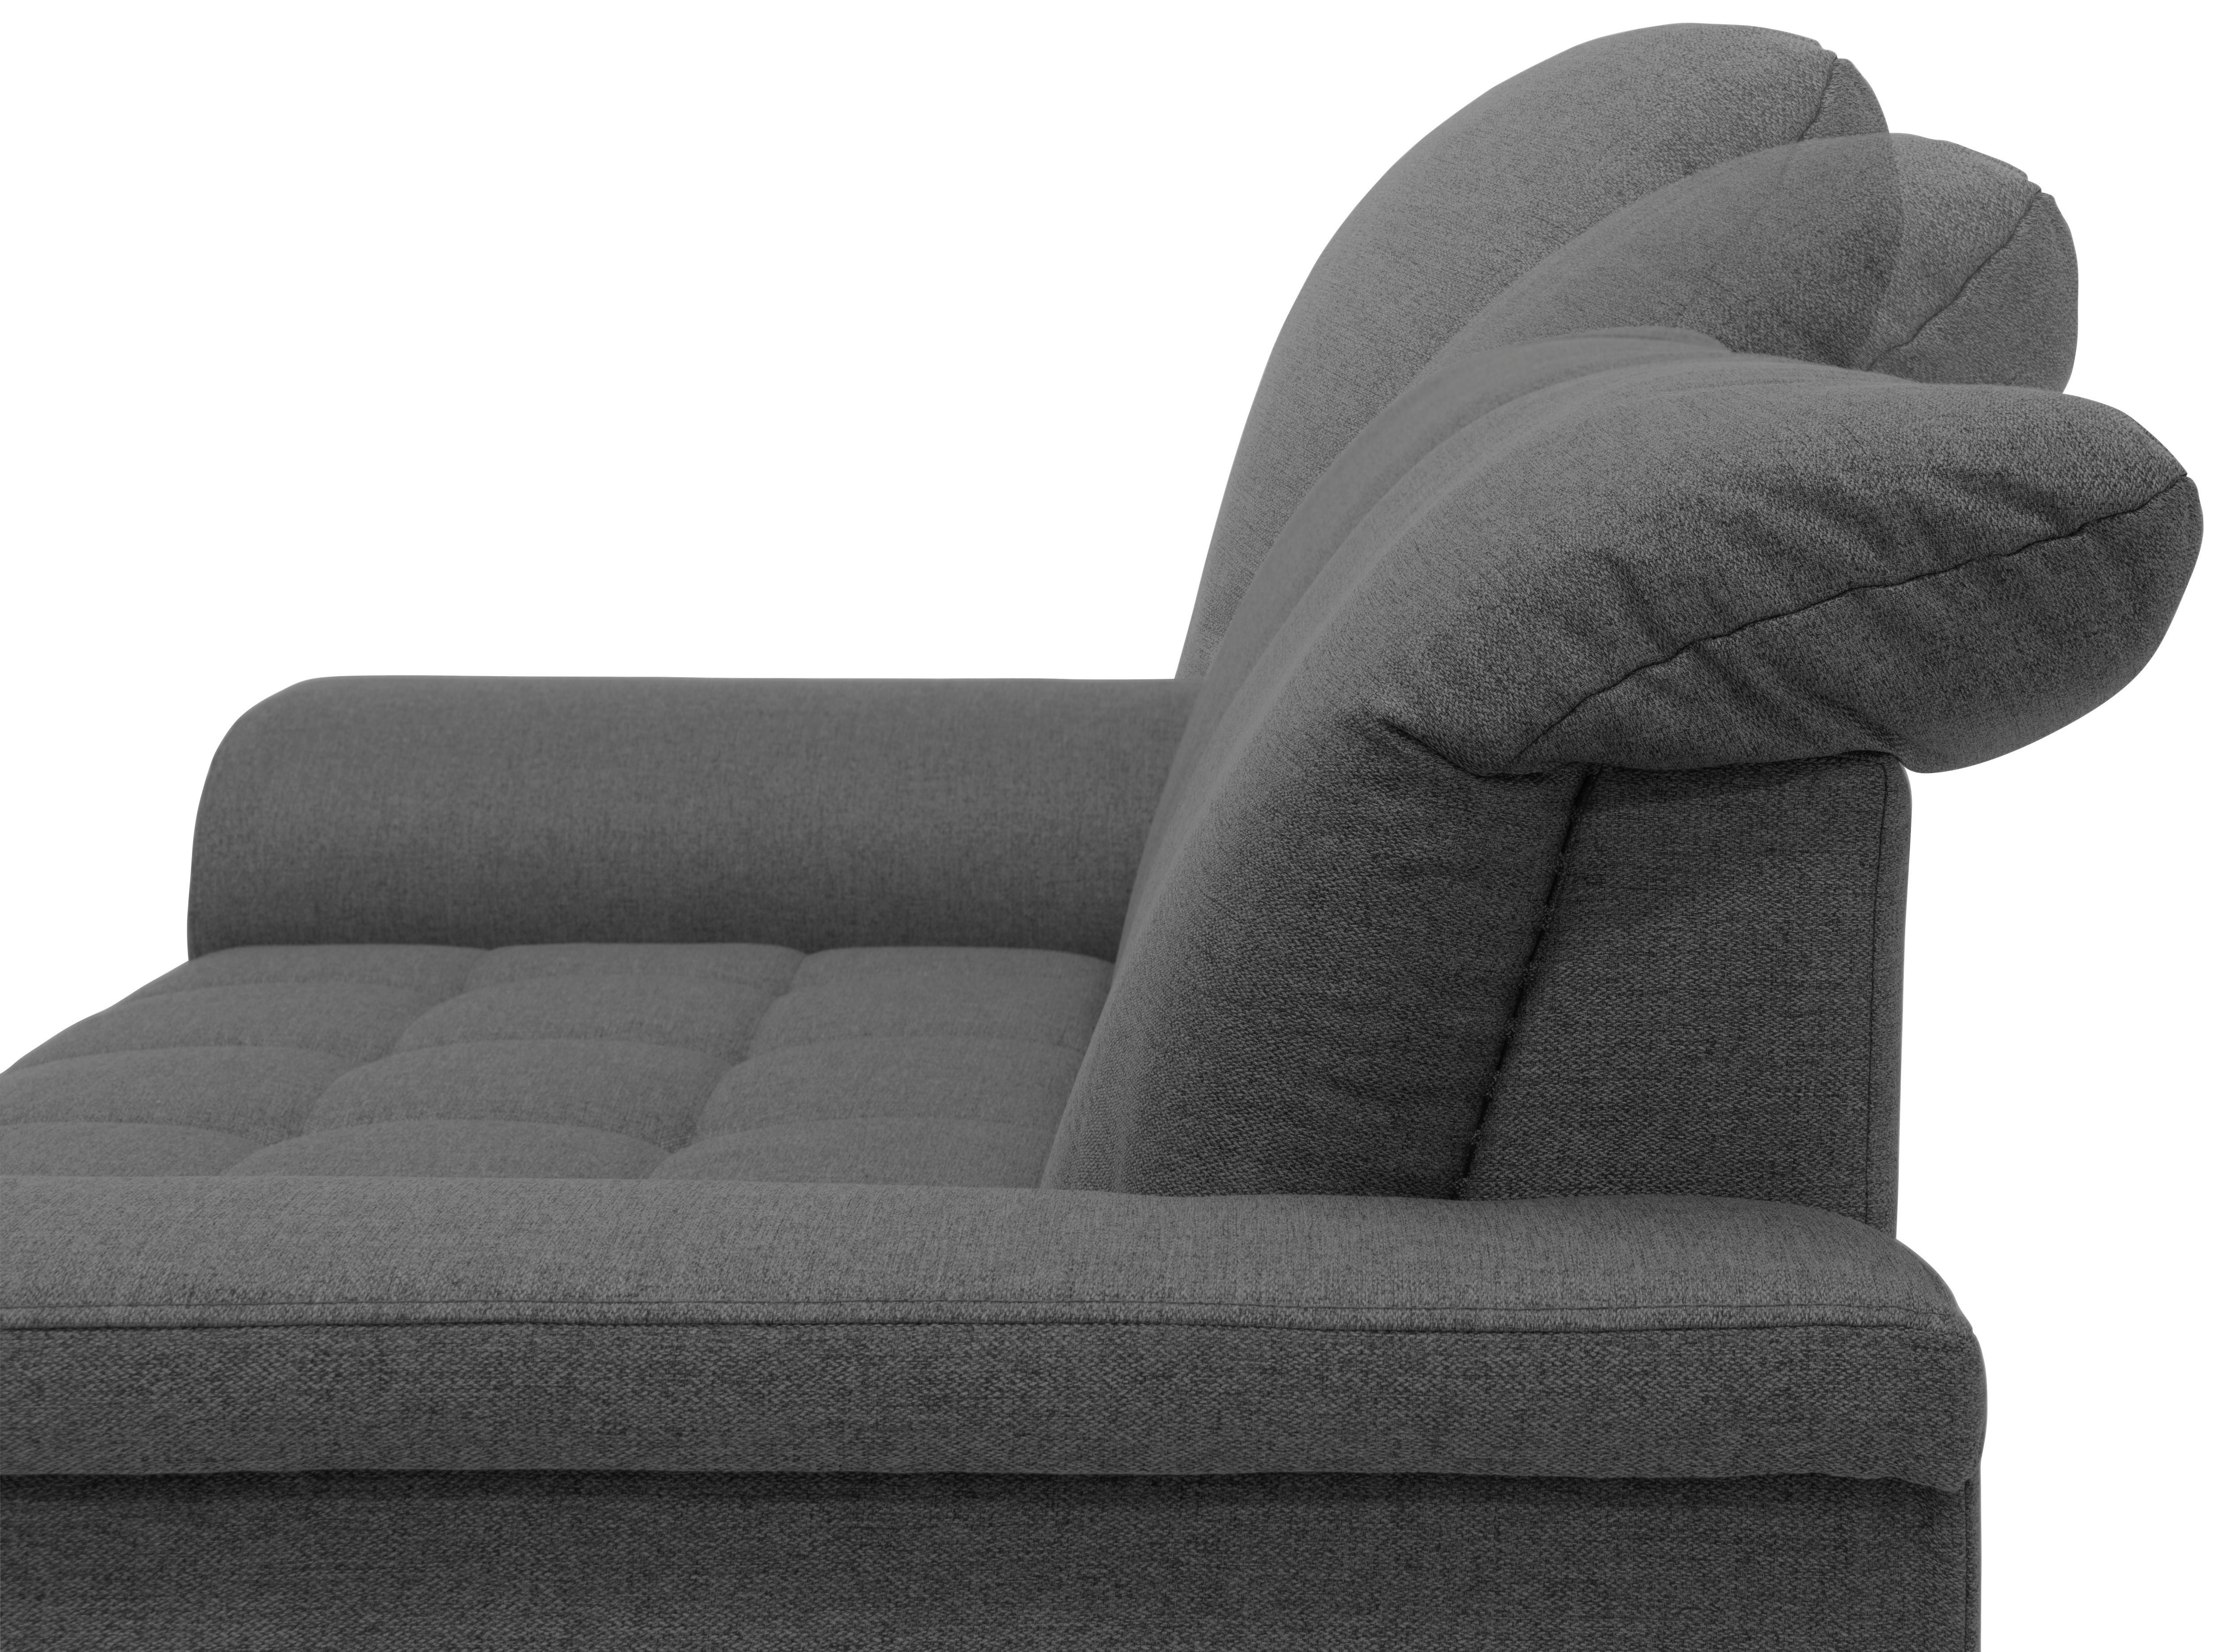 Zweisitzer-Sofa mit Funktion Webstoff Grau  - Chromfarben/Grau, KONVENTIONELL, Textil/Metall (190/81/105cm)